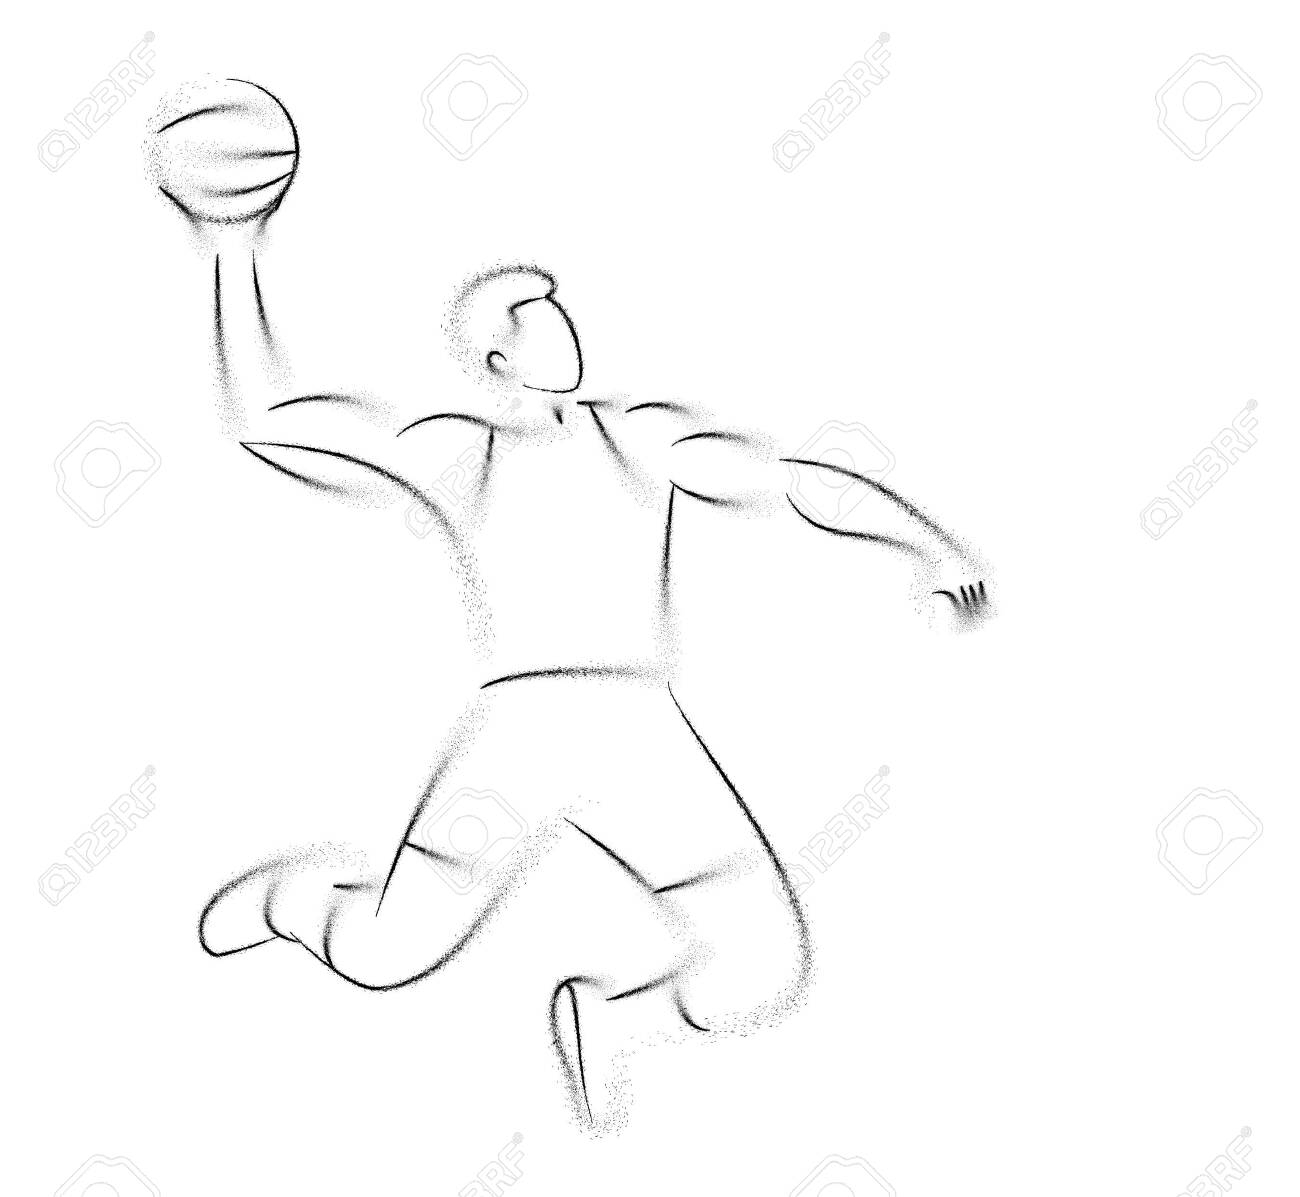 Баскетболист в прыжке схематично рисуем